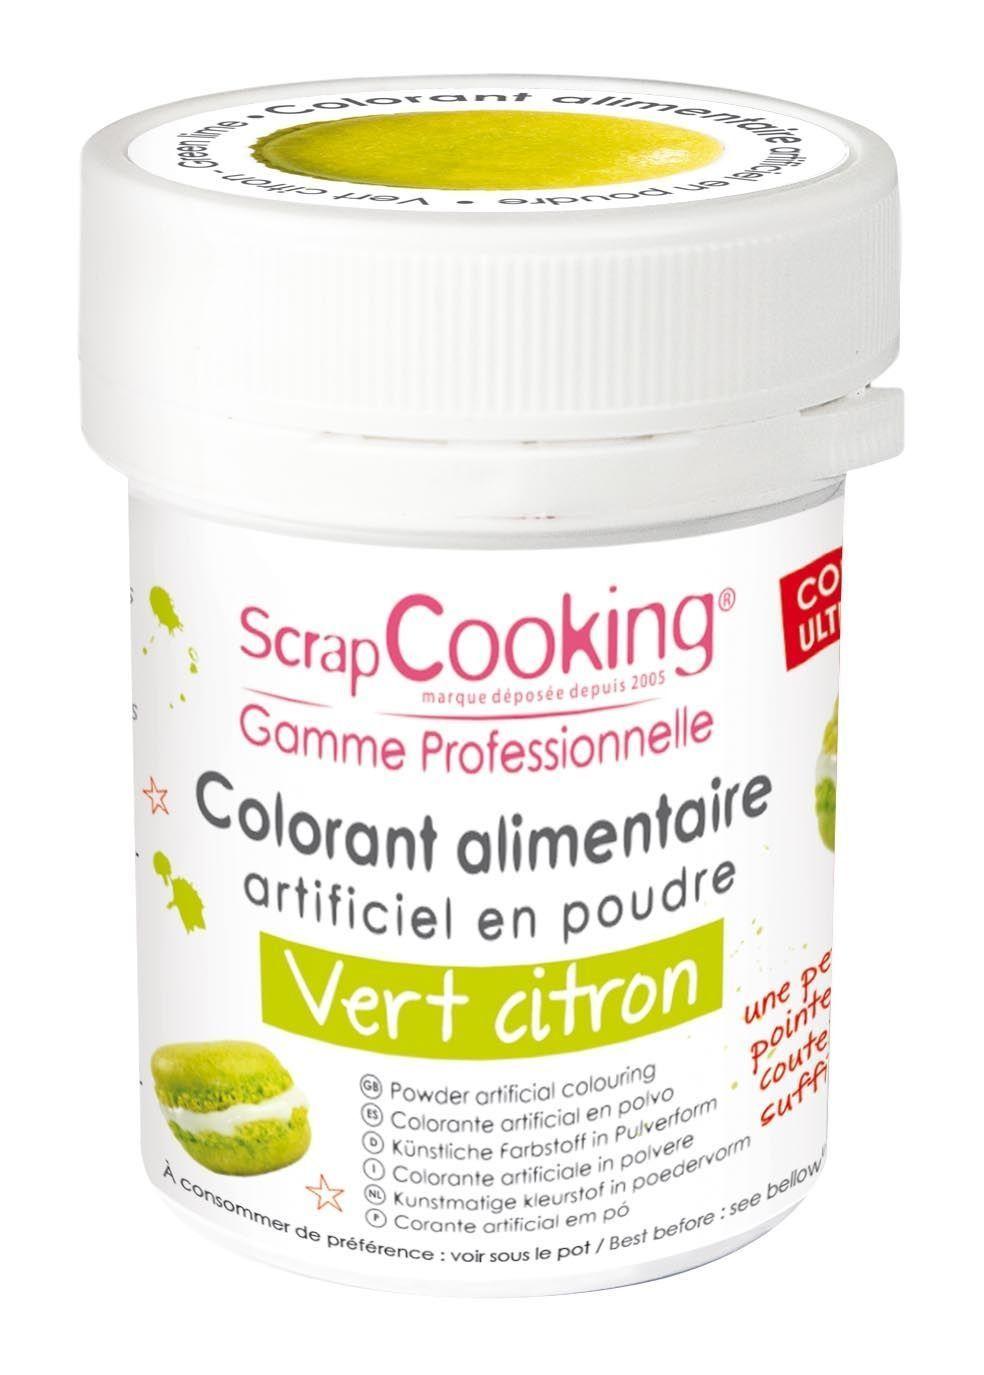 ScrapCooking - Colorant alimentaire vert en poudre d'origine